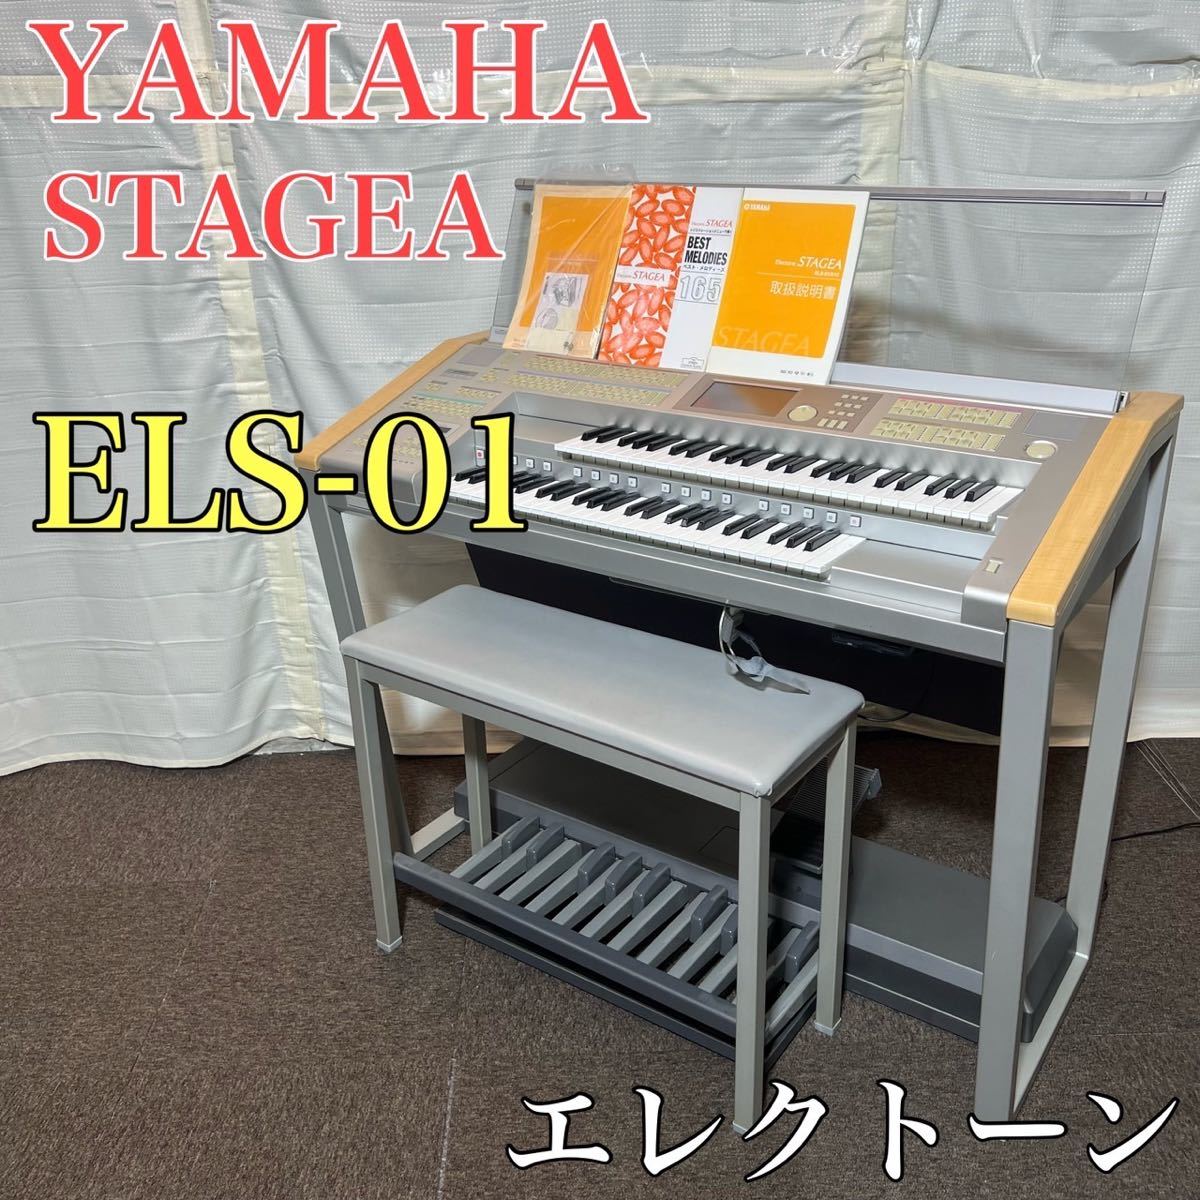 宇宙の香り YAMAHA エレクトーン STAGEA ELS-01 音楽 楽器 A0292 ...